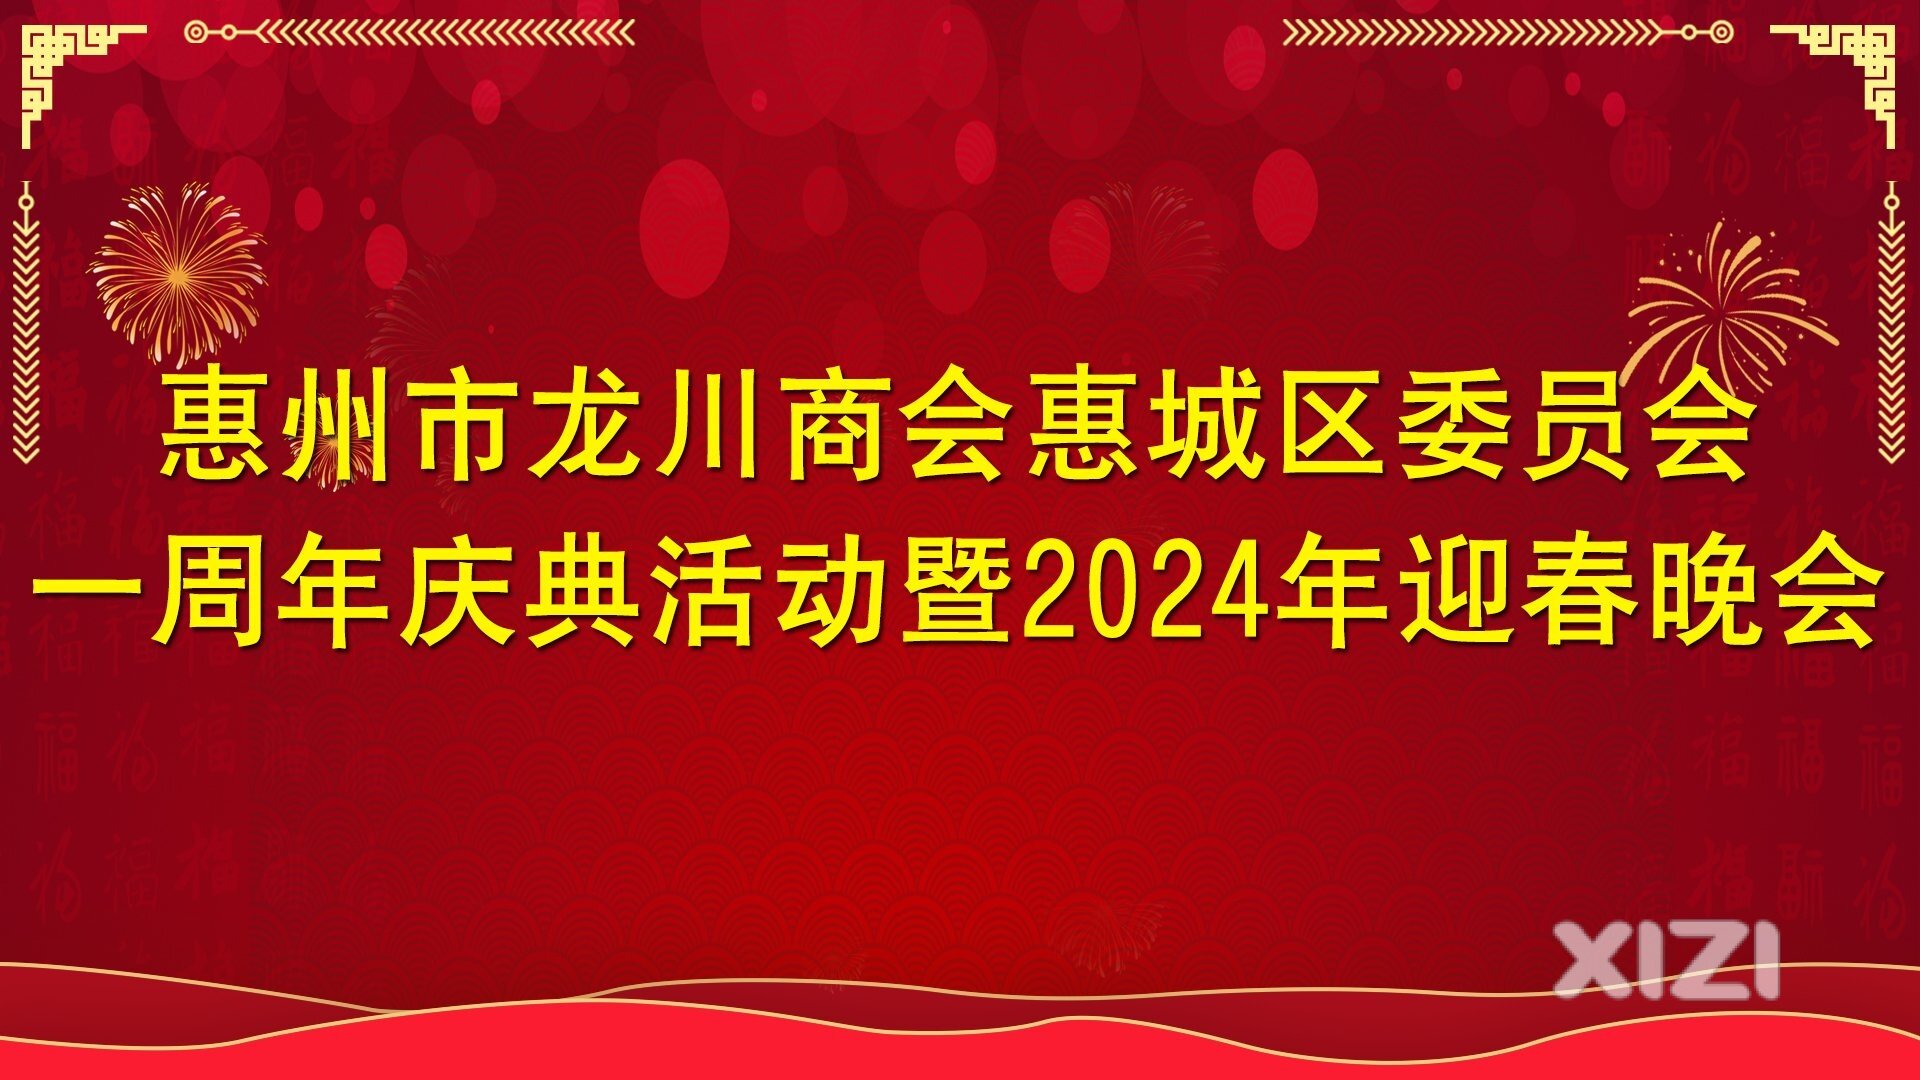 惠州市龙川商会惠城区委员会成立一周年庆典圆满成功